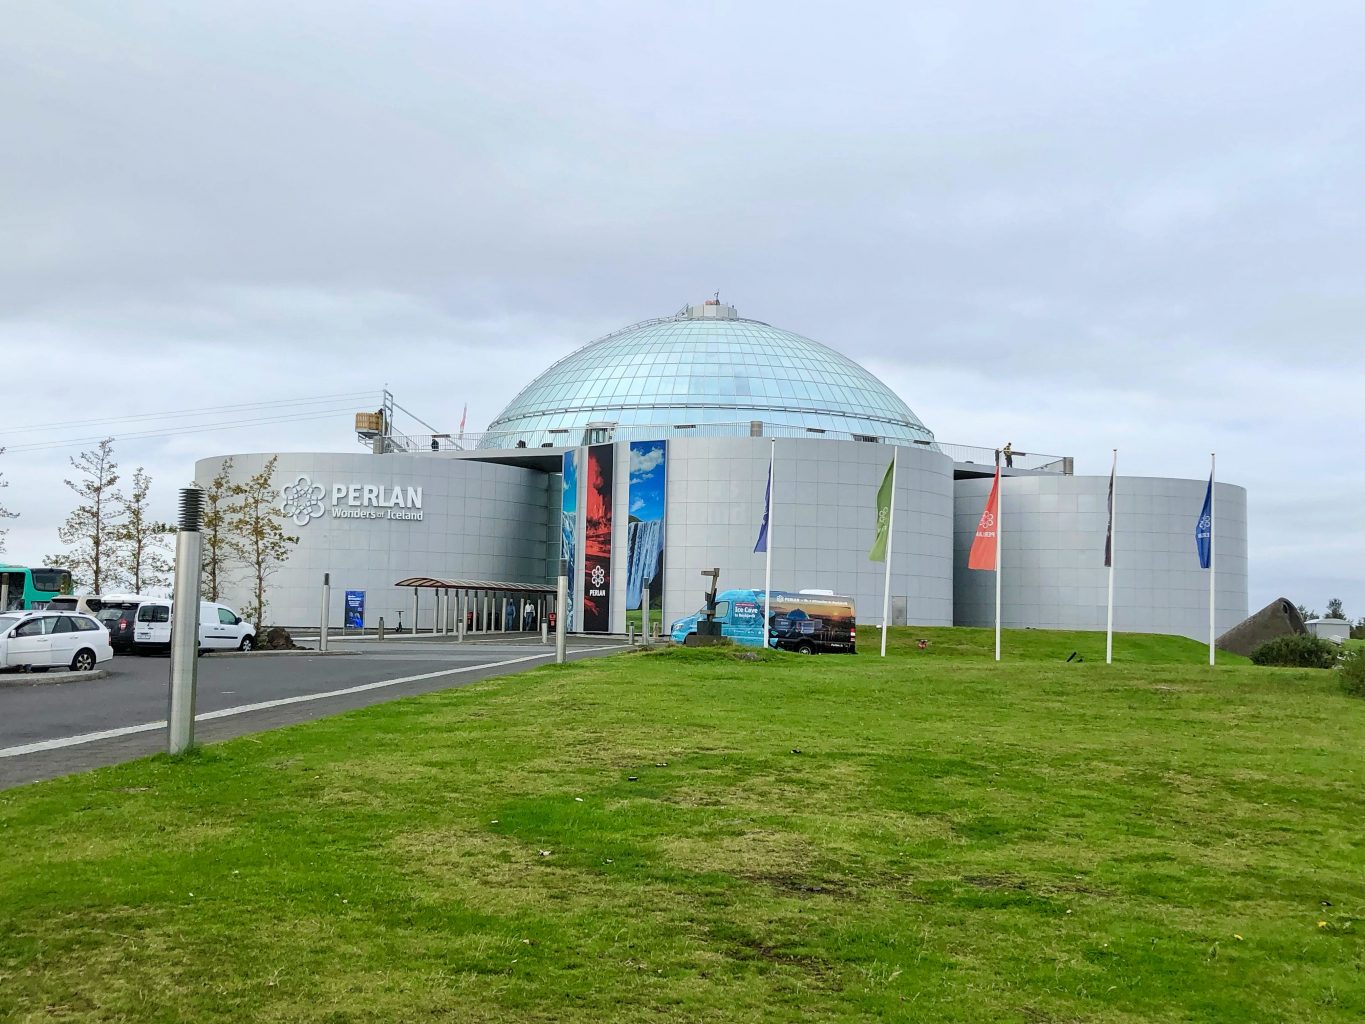 Museo Perlan. qué ver y hacer en Reikiavik